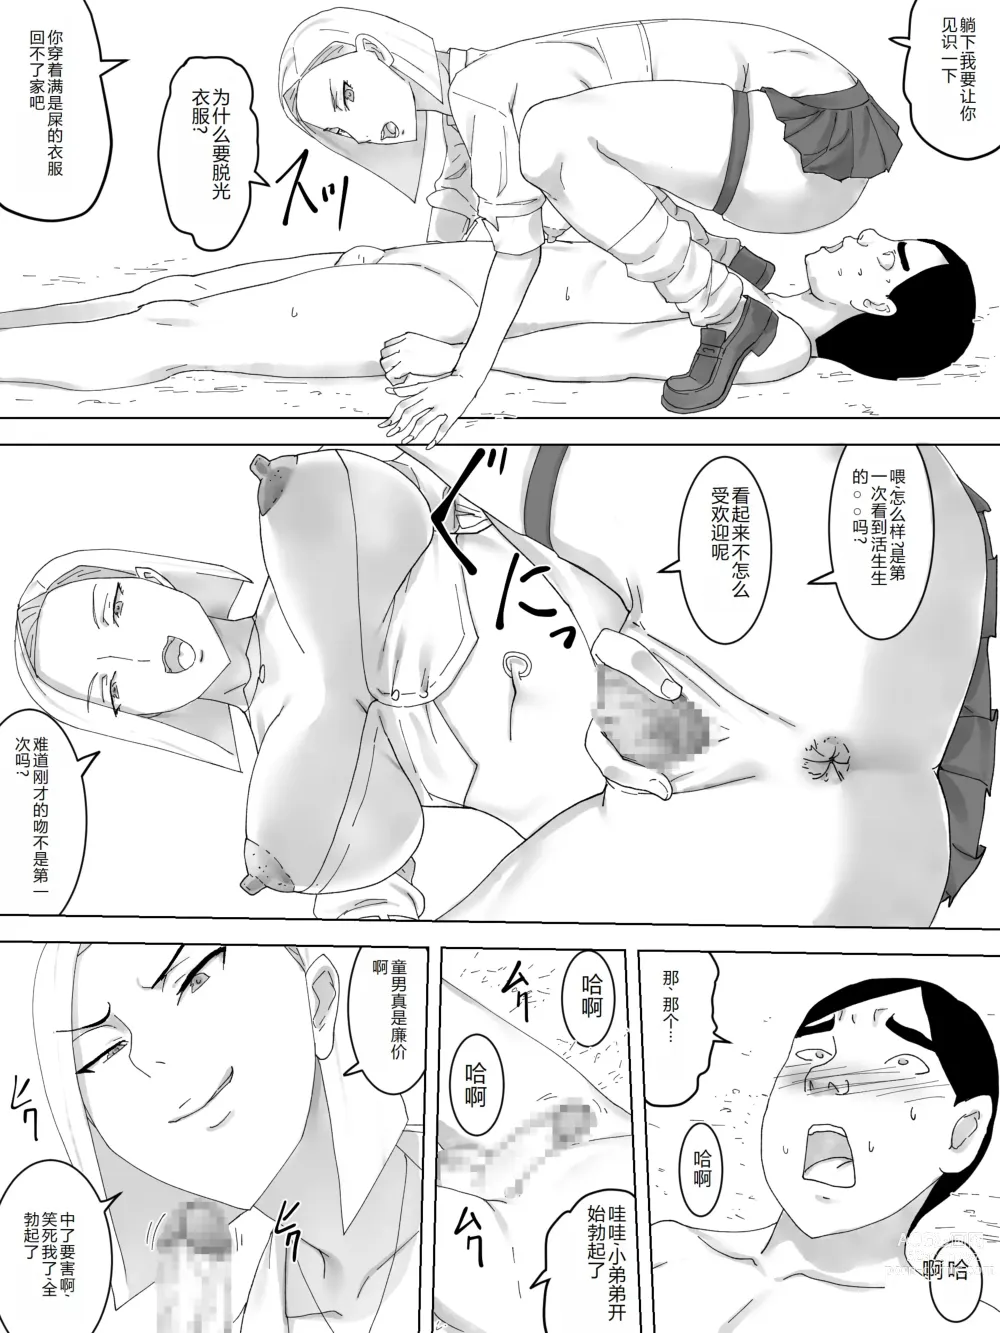 Page 12 of doujinshi Benki no kokuhaku